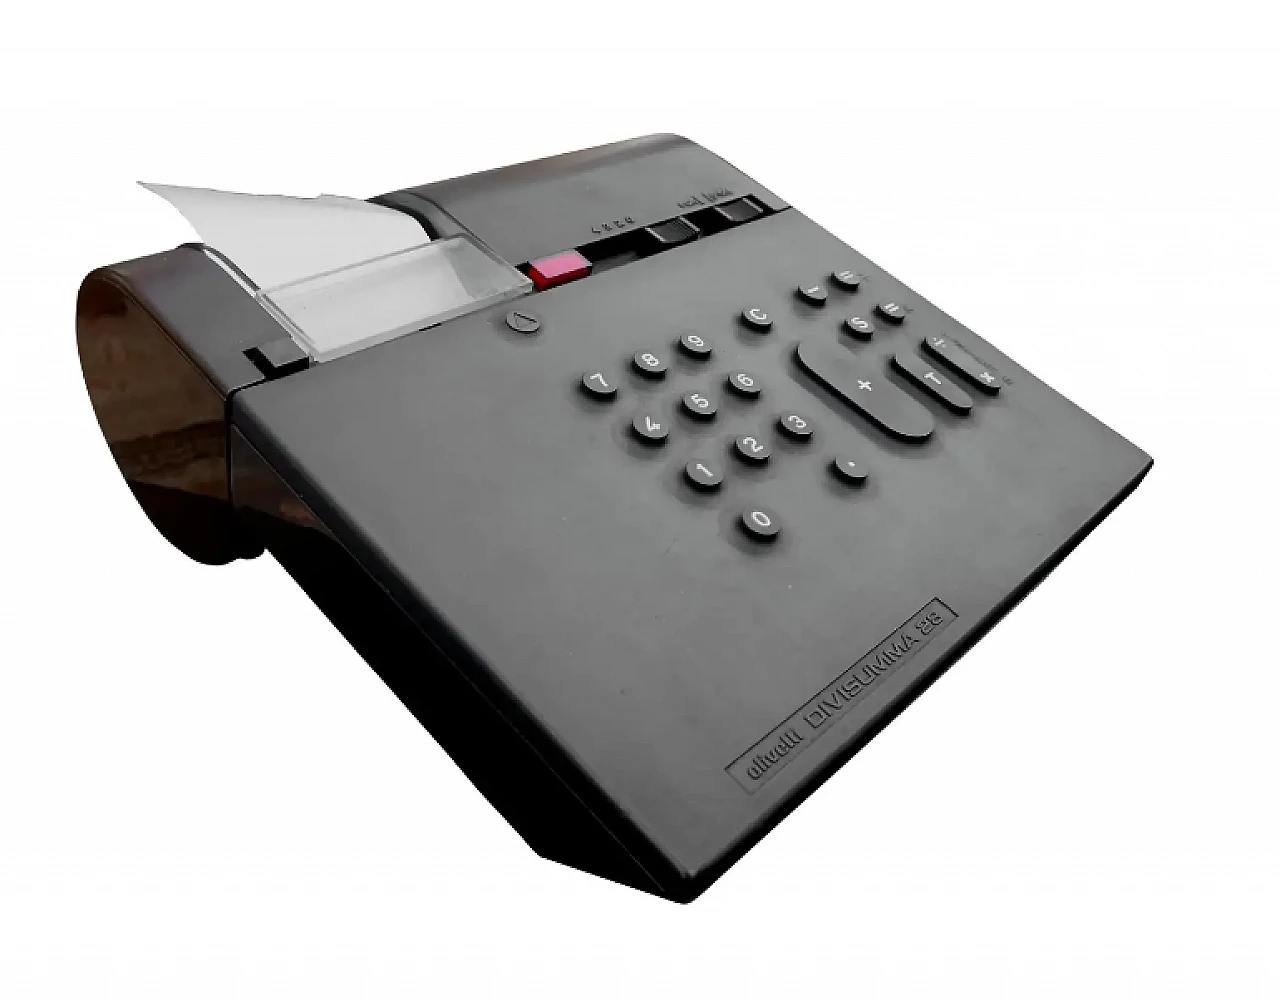 Olivetti Divisumma 28 calculator by Mario Bellini, 1970s 1